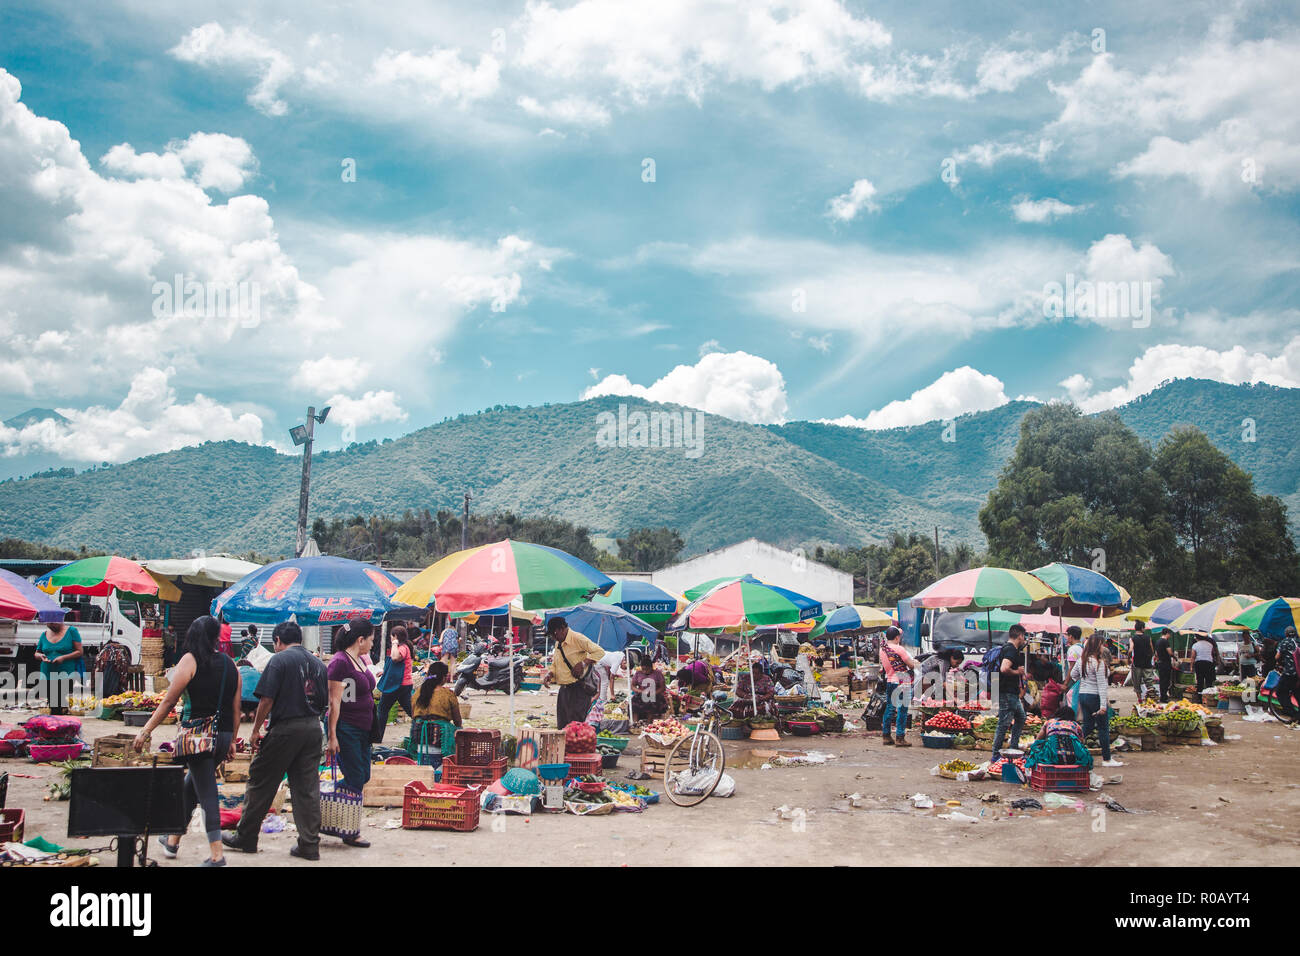 Cibo vivaci bancarelle del mercato prevista sul pavimento da donne nel tradizionale abito Maya sotto ombrellone colorati ombrelloni in Antigua, Guatemala Foto Stock